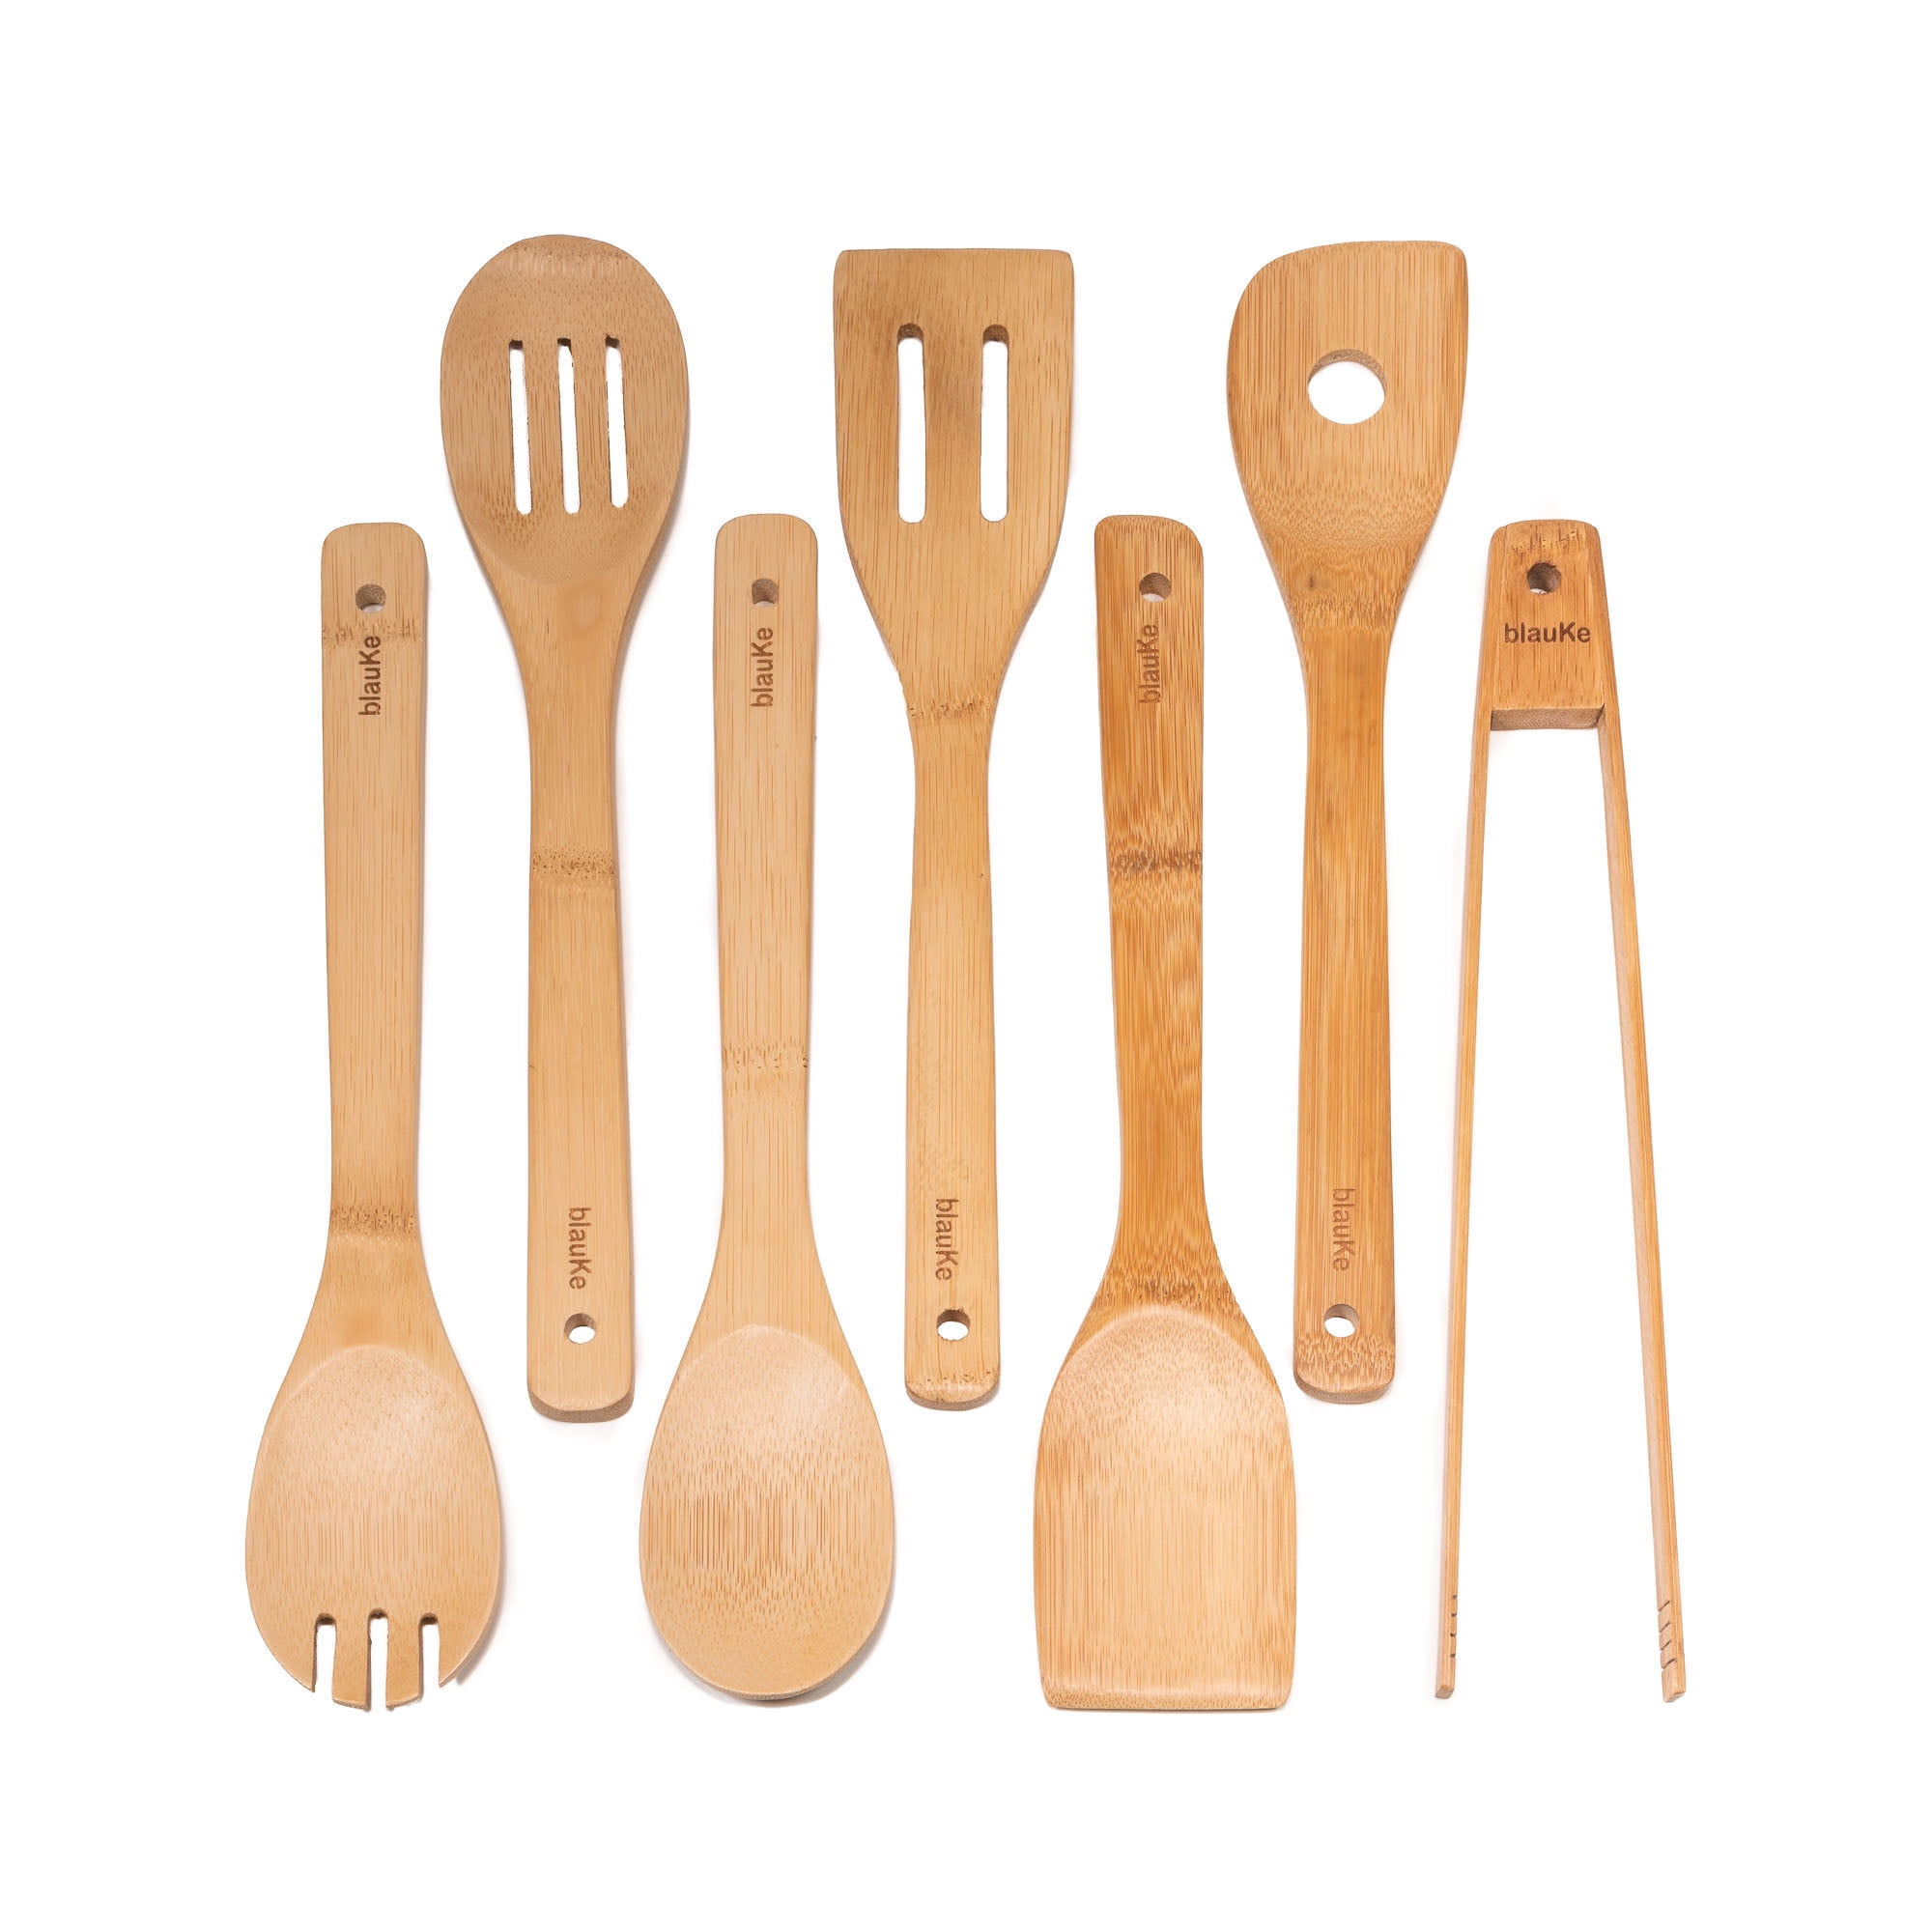 Bamboo Kitchen Utensils Set 8-Pack - Wooden Cooking Utensils for Nonstick  Cookware - Wooden Cooking Spoons, Spatulas, Turner, Tongs, Utensil Holder